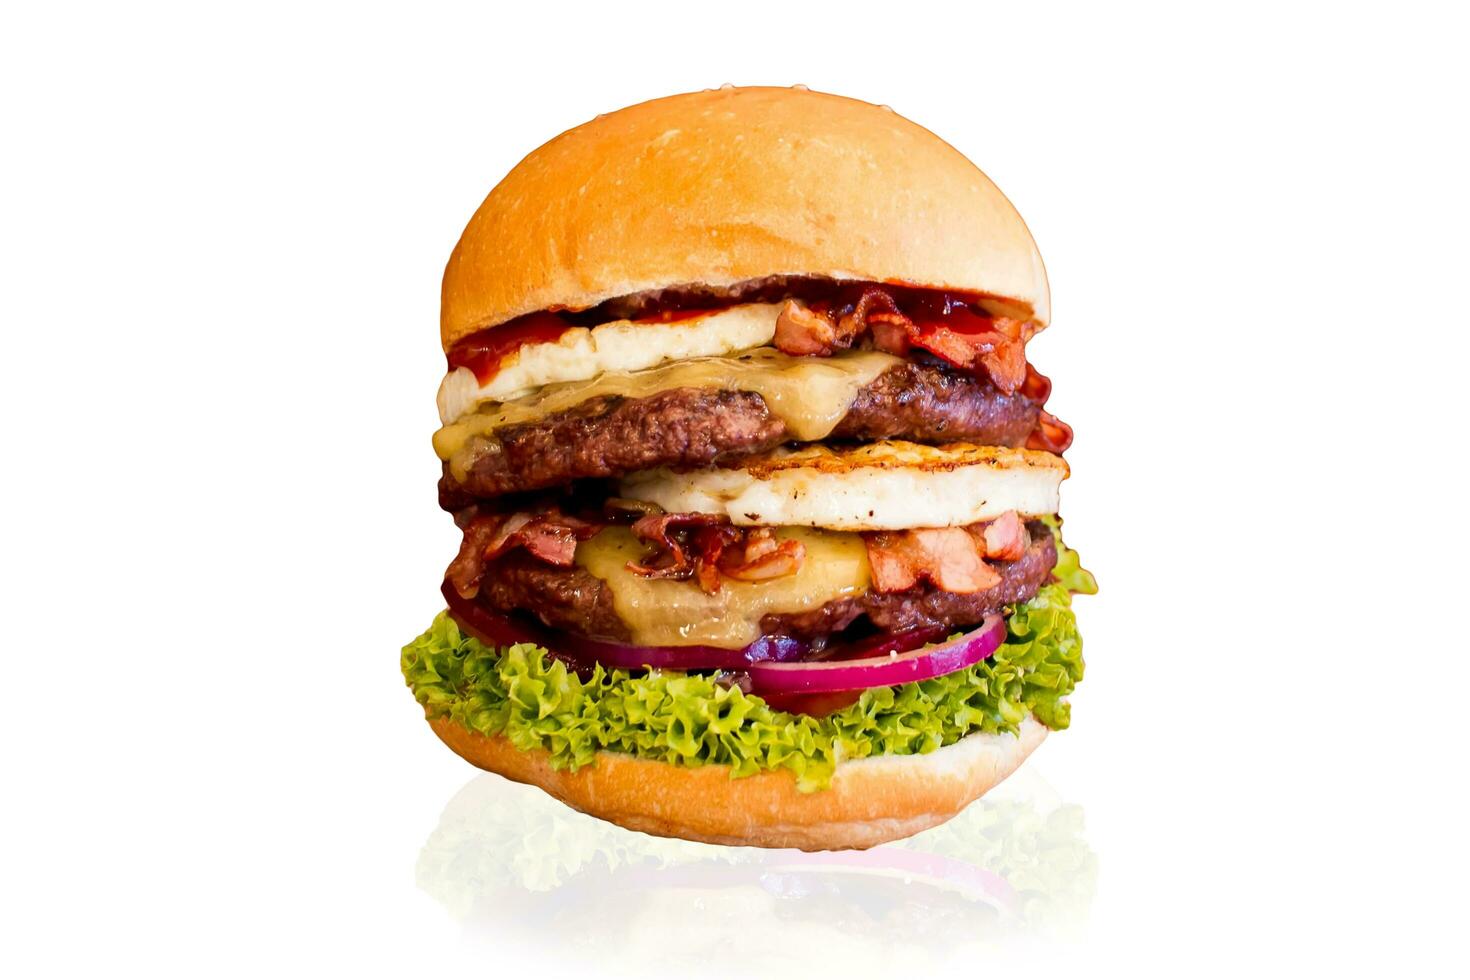 ronzio hamburger, formaggio hamburger, verdura hamburger, Fast food, Manzo hamburger, cipolla, pane, ketchup foto